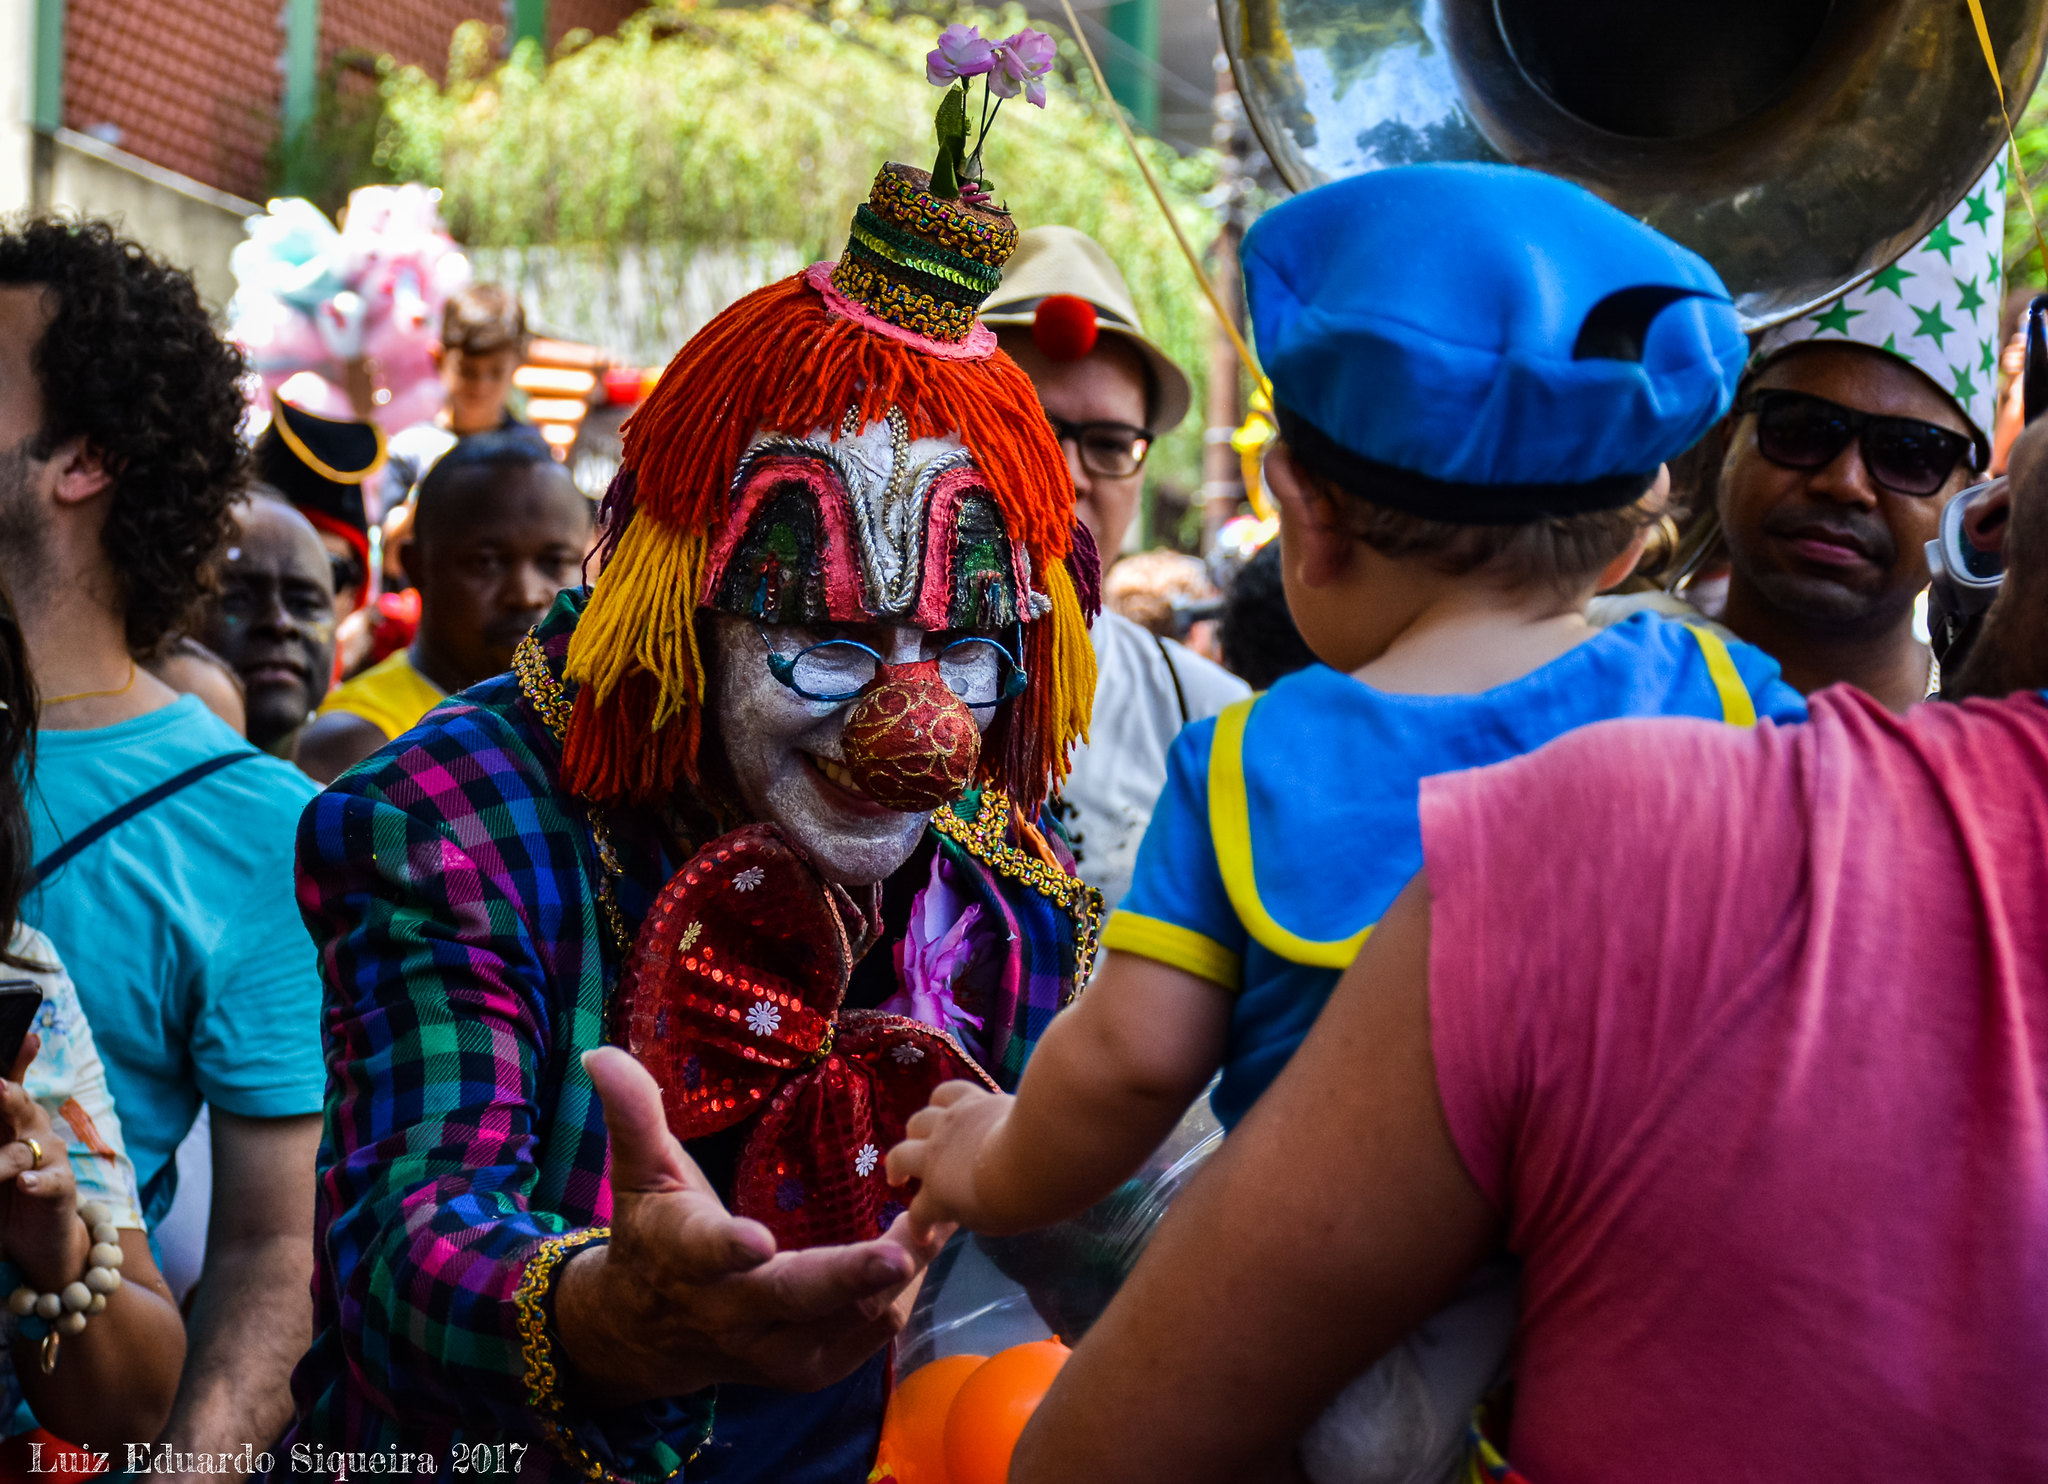 Blocos de carnaval 2024 Rio de Janeiro, lista completa!